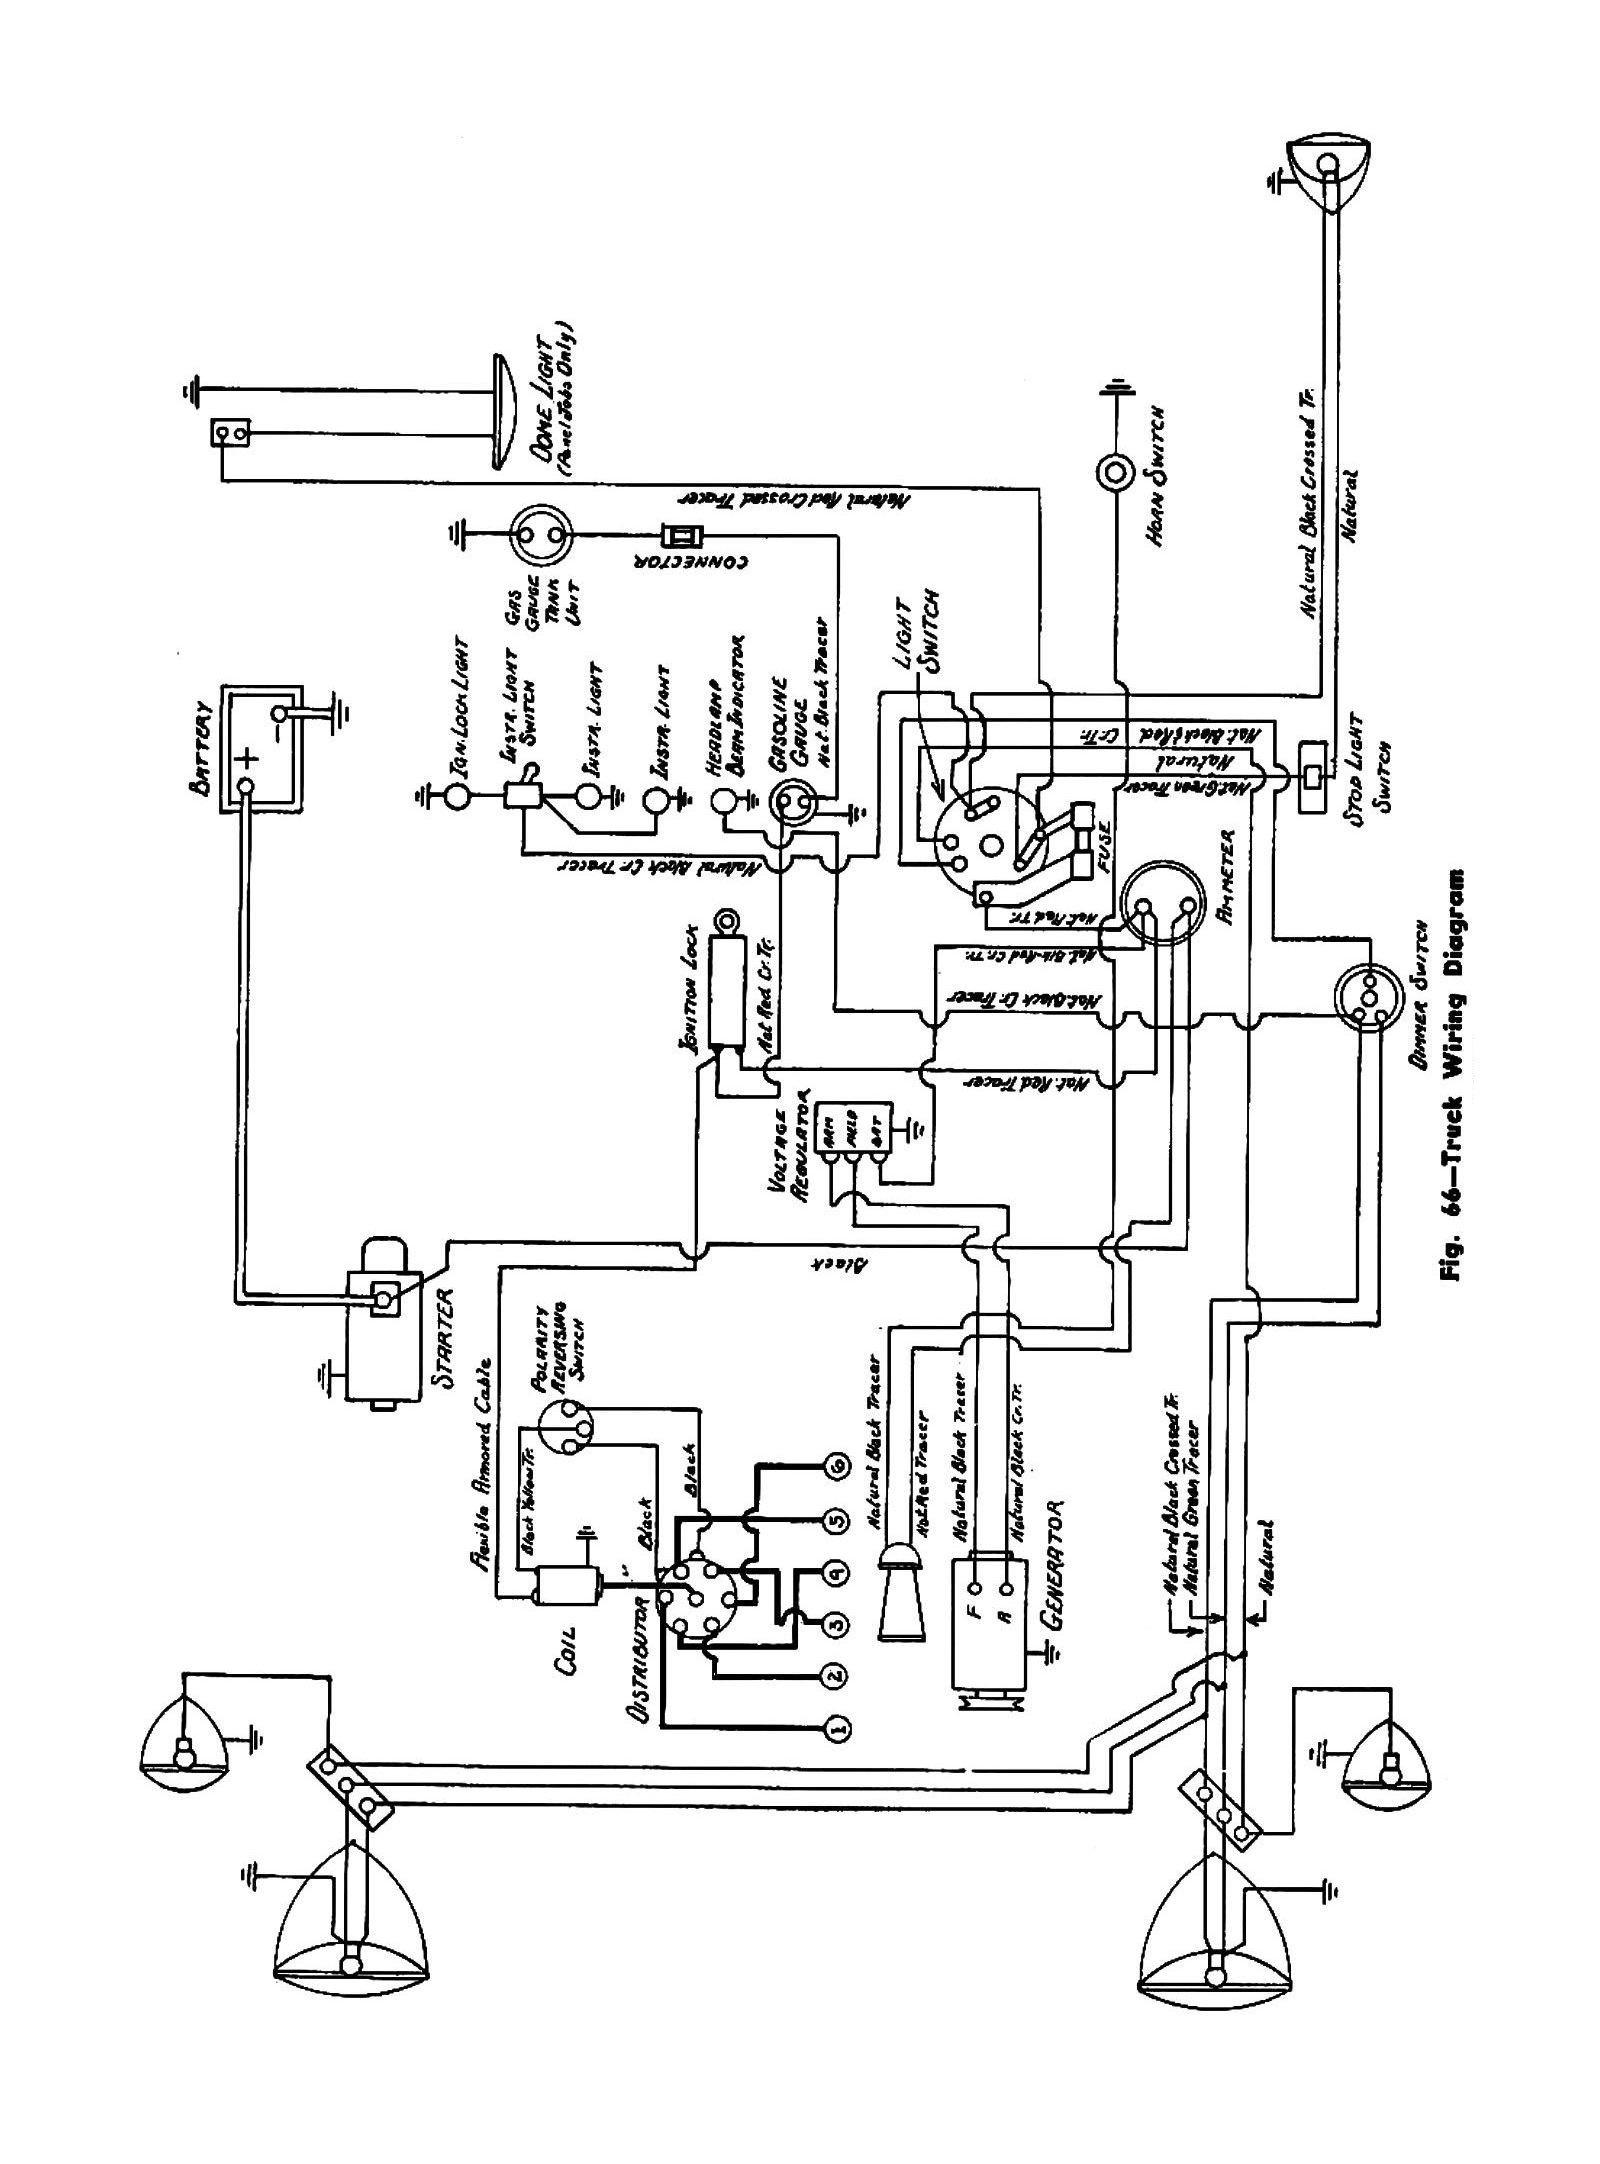 47 International Trucks Wiring Diagram - Wiring Diagram Data Oreo - International Truck Wiring Diagram Manual